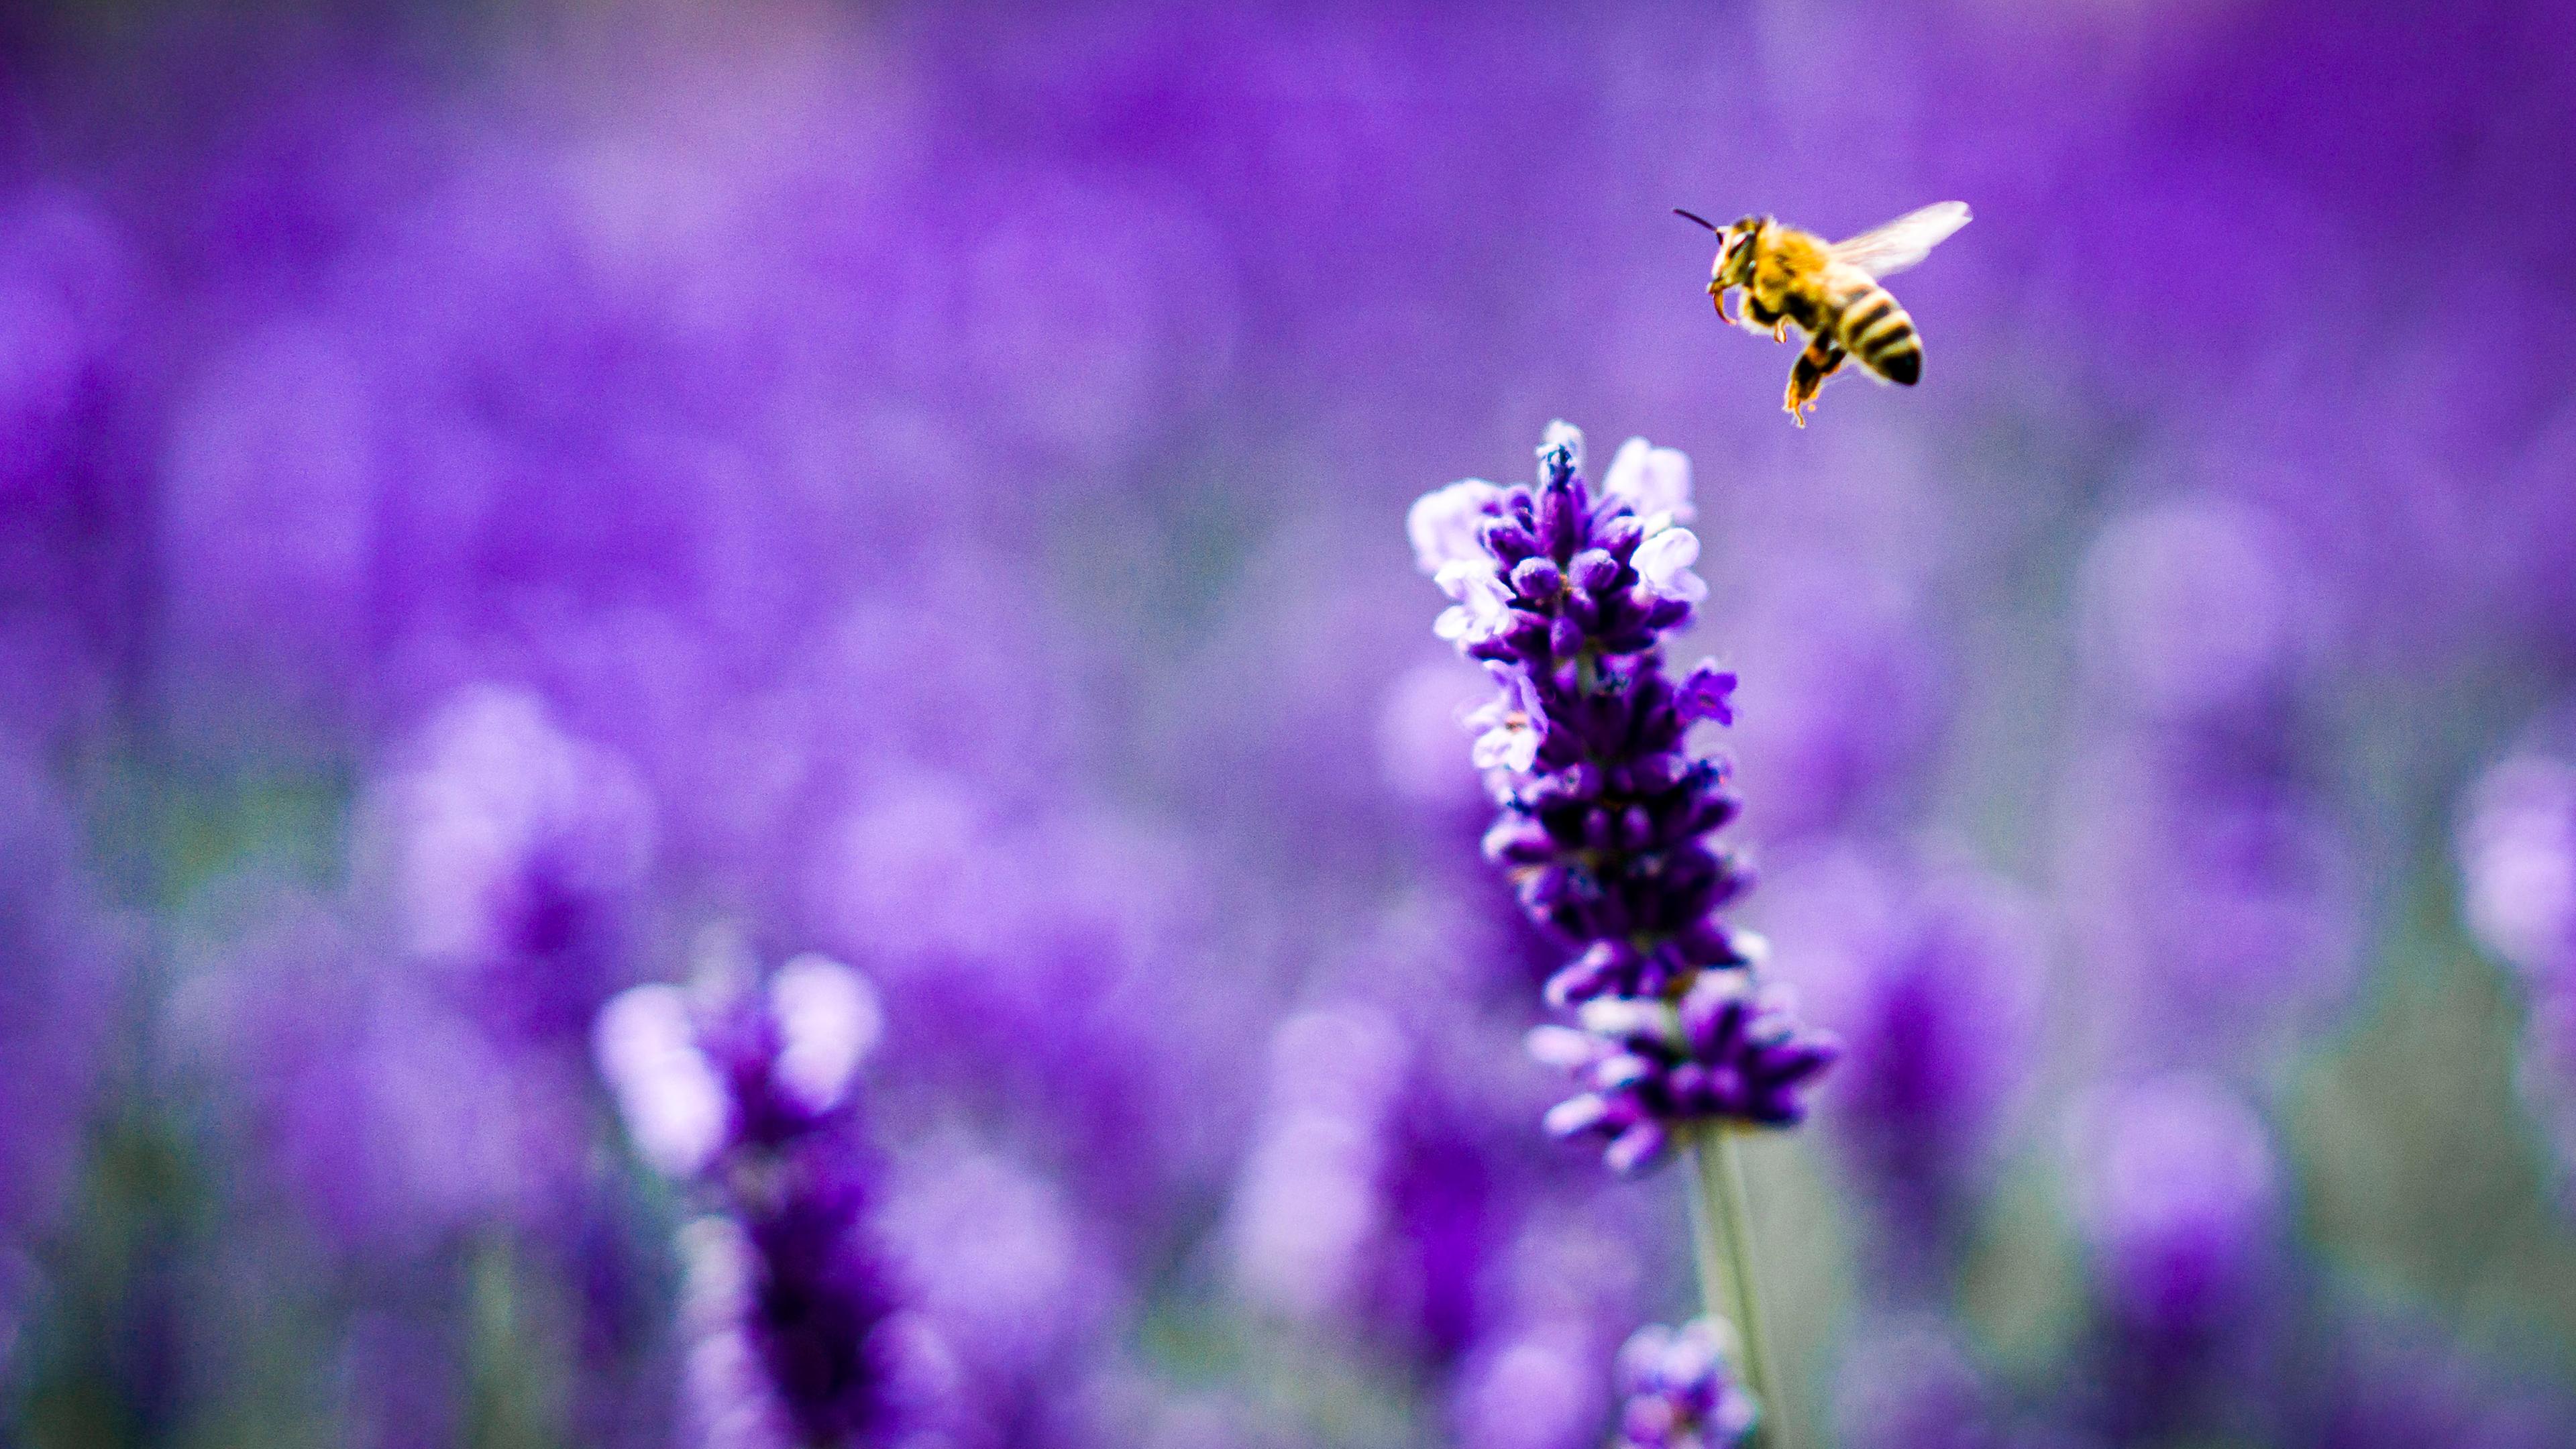 Archiv: Eine Biene landet auf einer Blüte eines Lavendelstrauchs